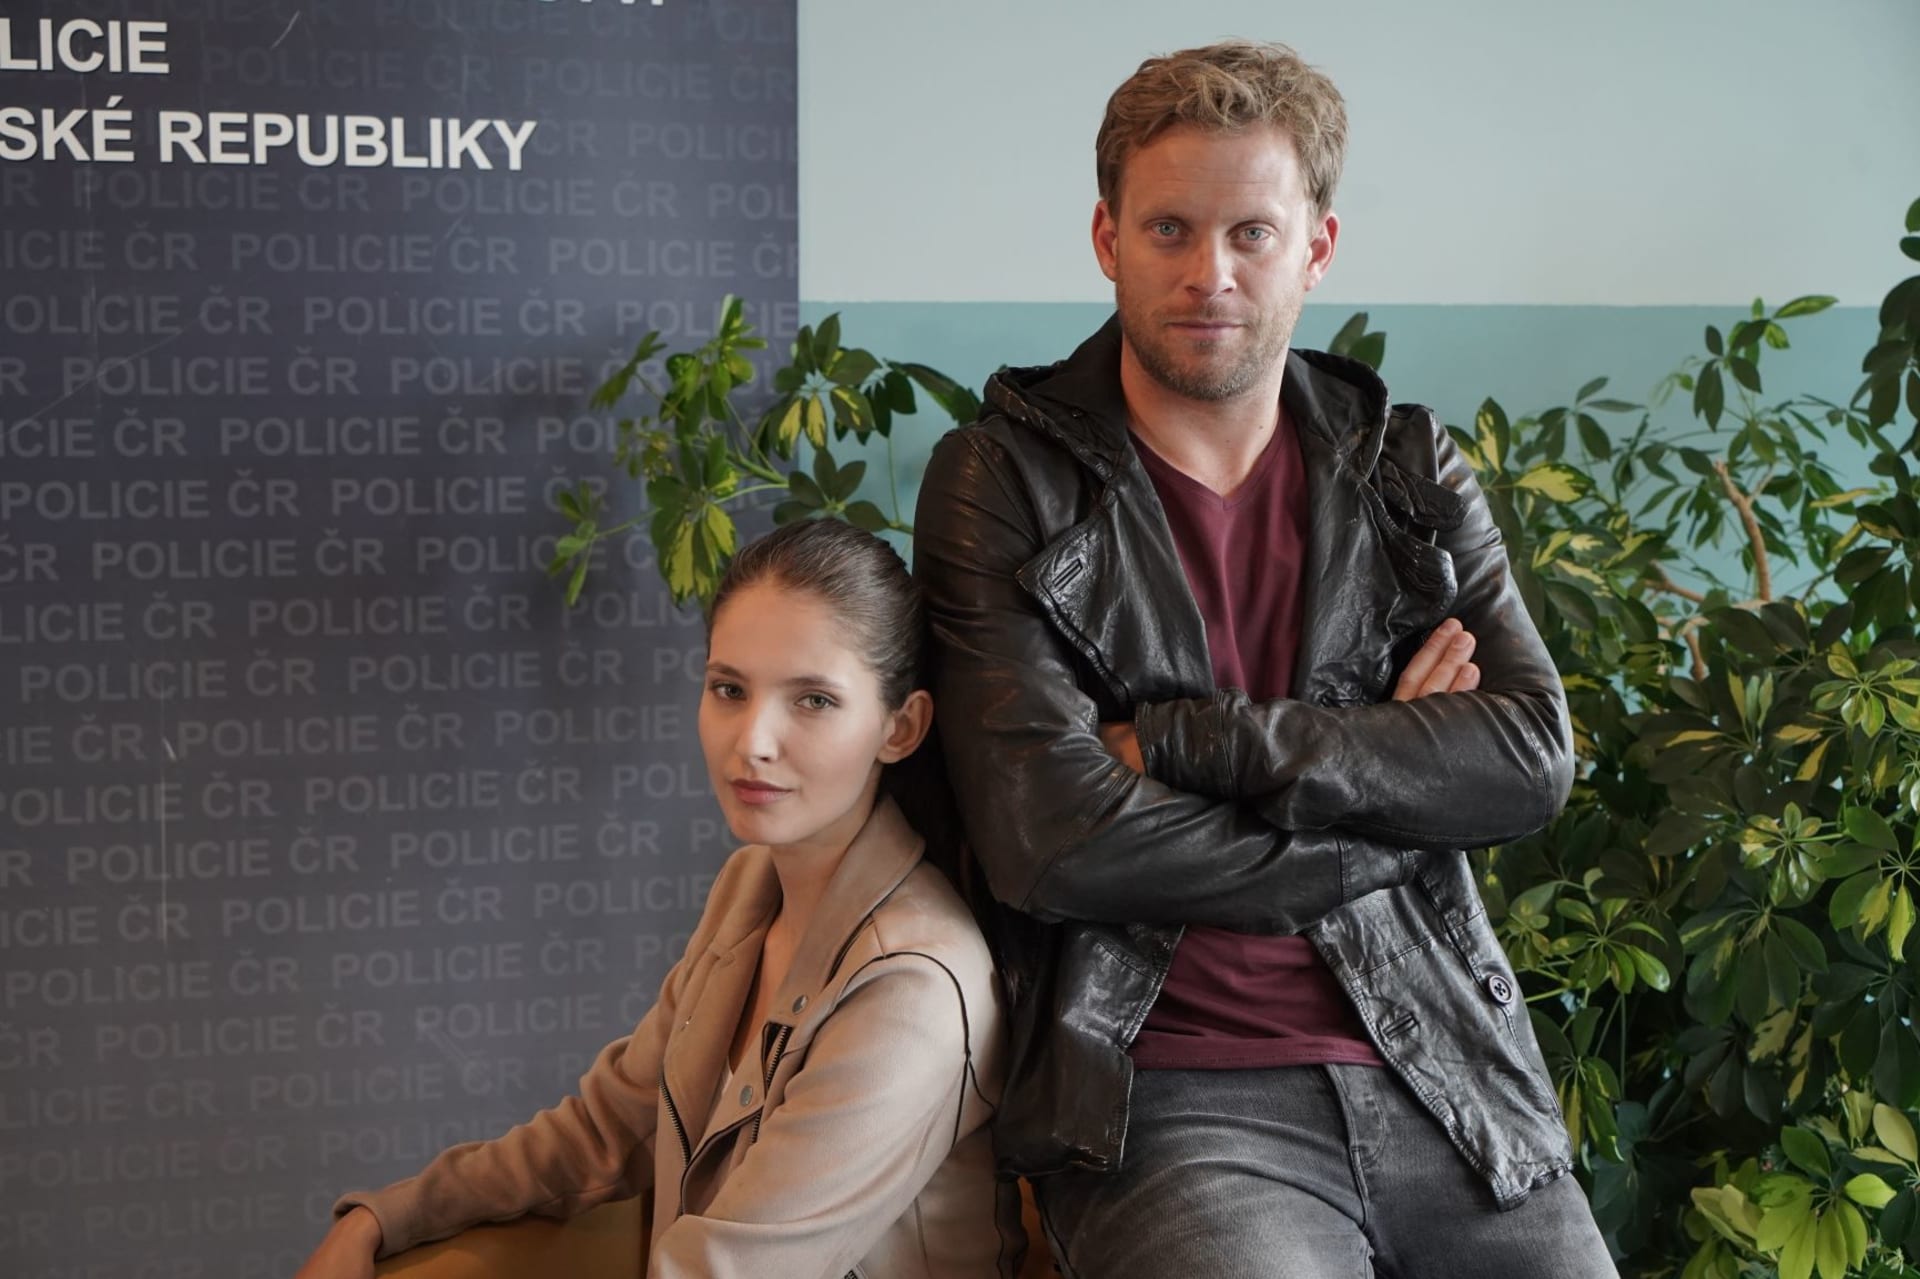 Dvojka na zabití je nový seriál FTV Prima s Jakubem Prachařem a Sarou Sandevou v hlavních rolích, který vás určitě bude bavit.